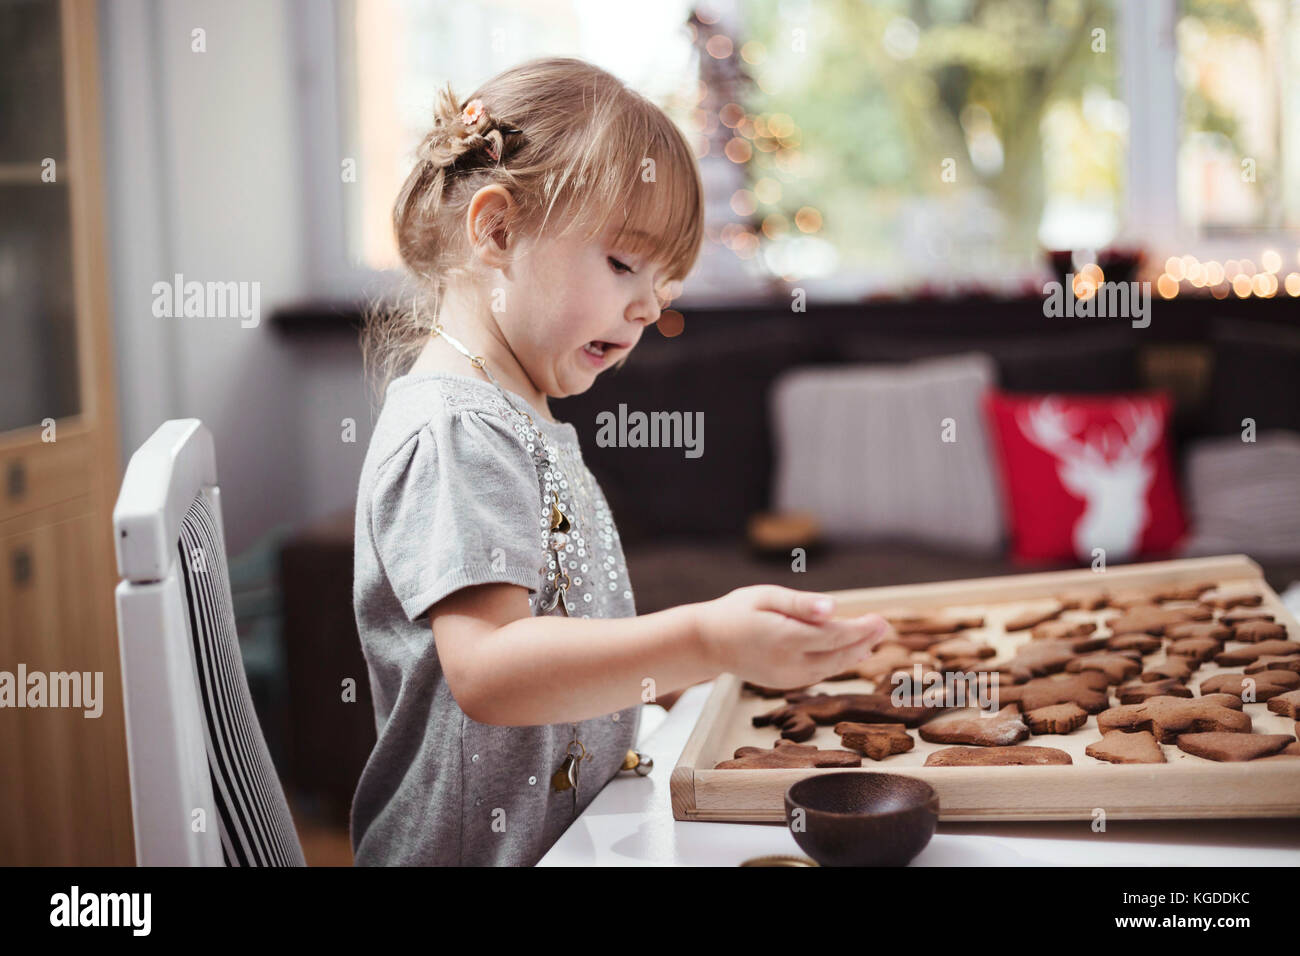 Bambina la decorazione di Natale biscotti allo zenzero con glassa. Luce naturale, profondità di campo Foto Stock